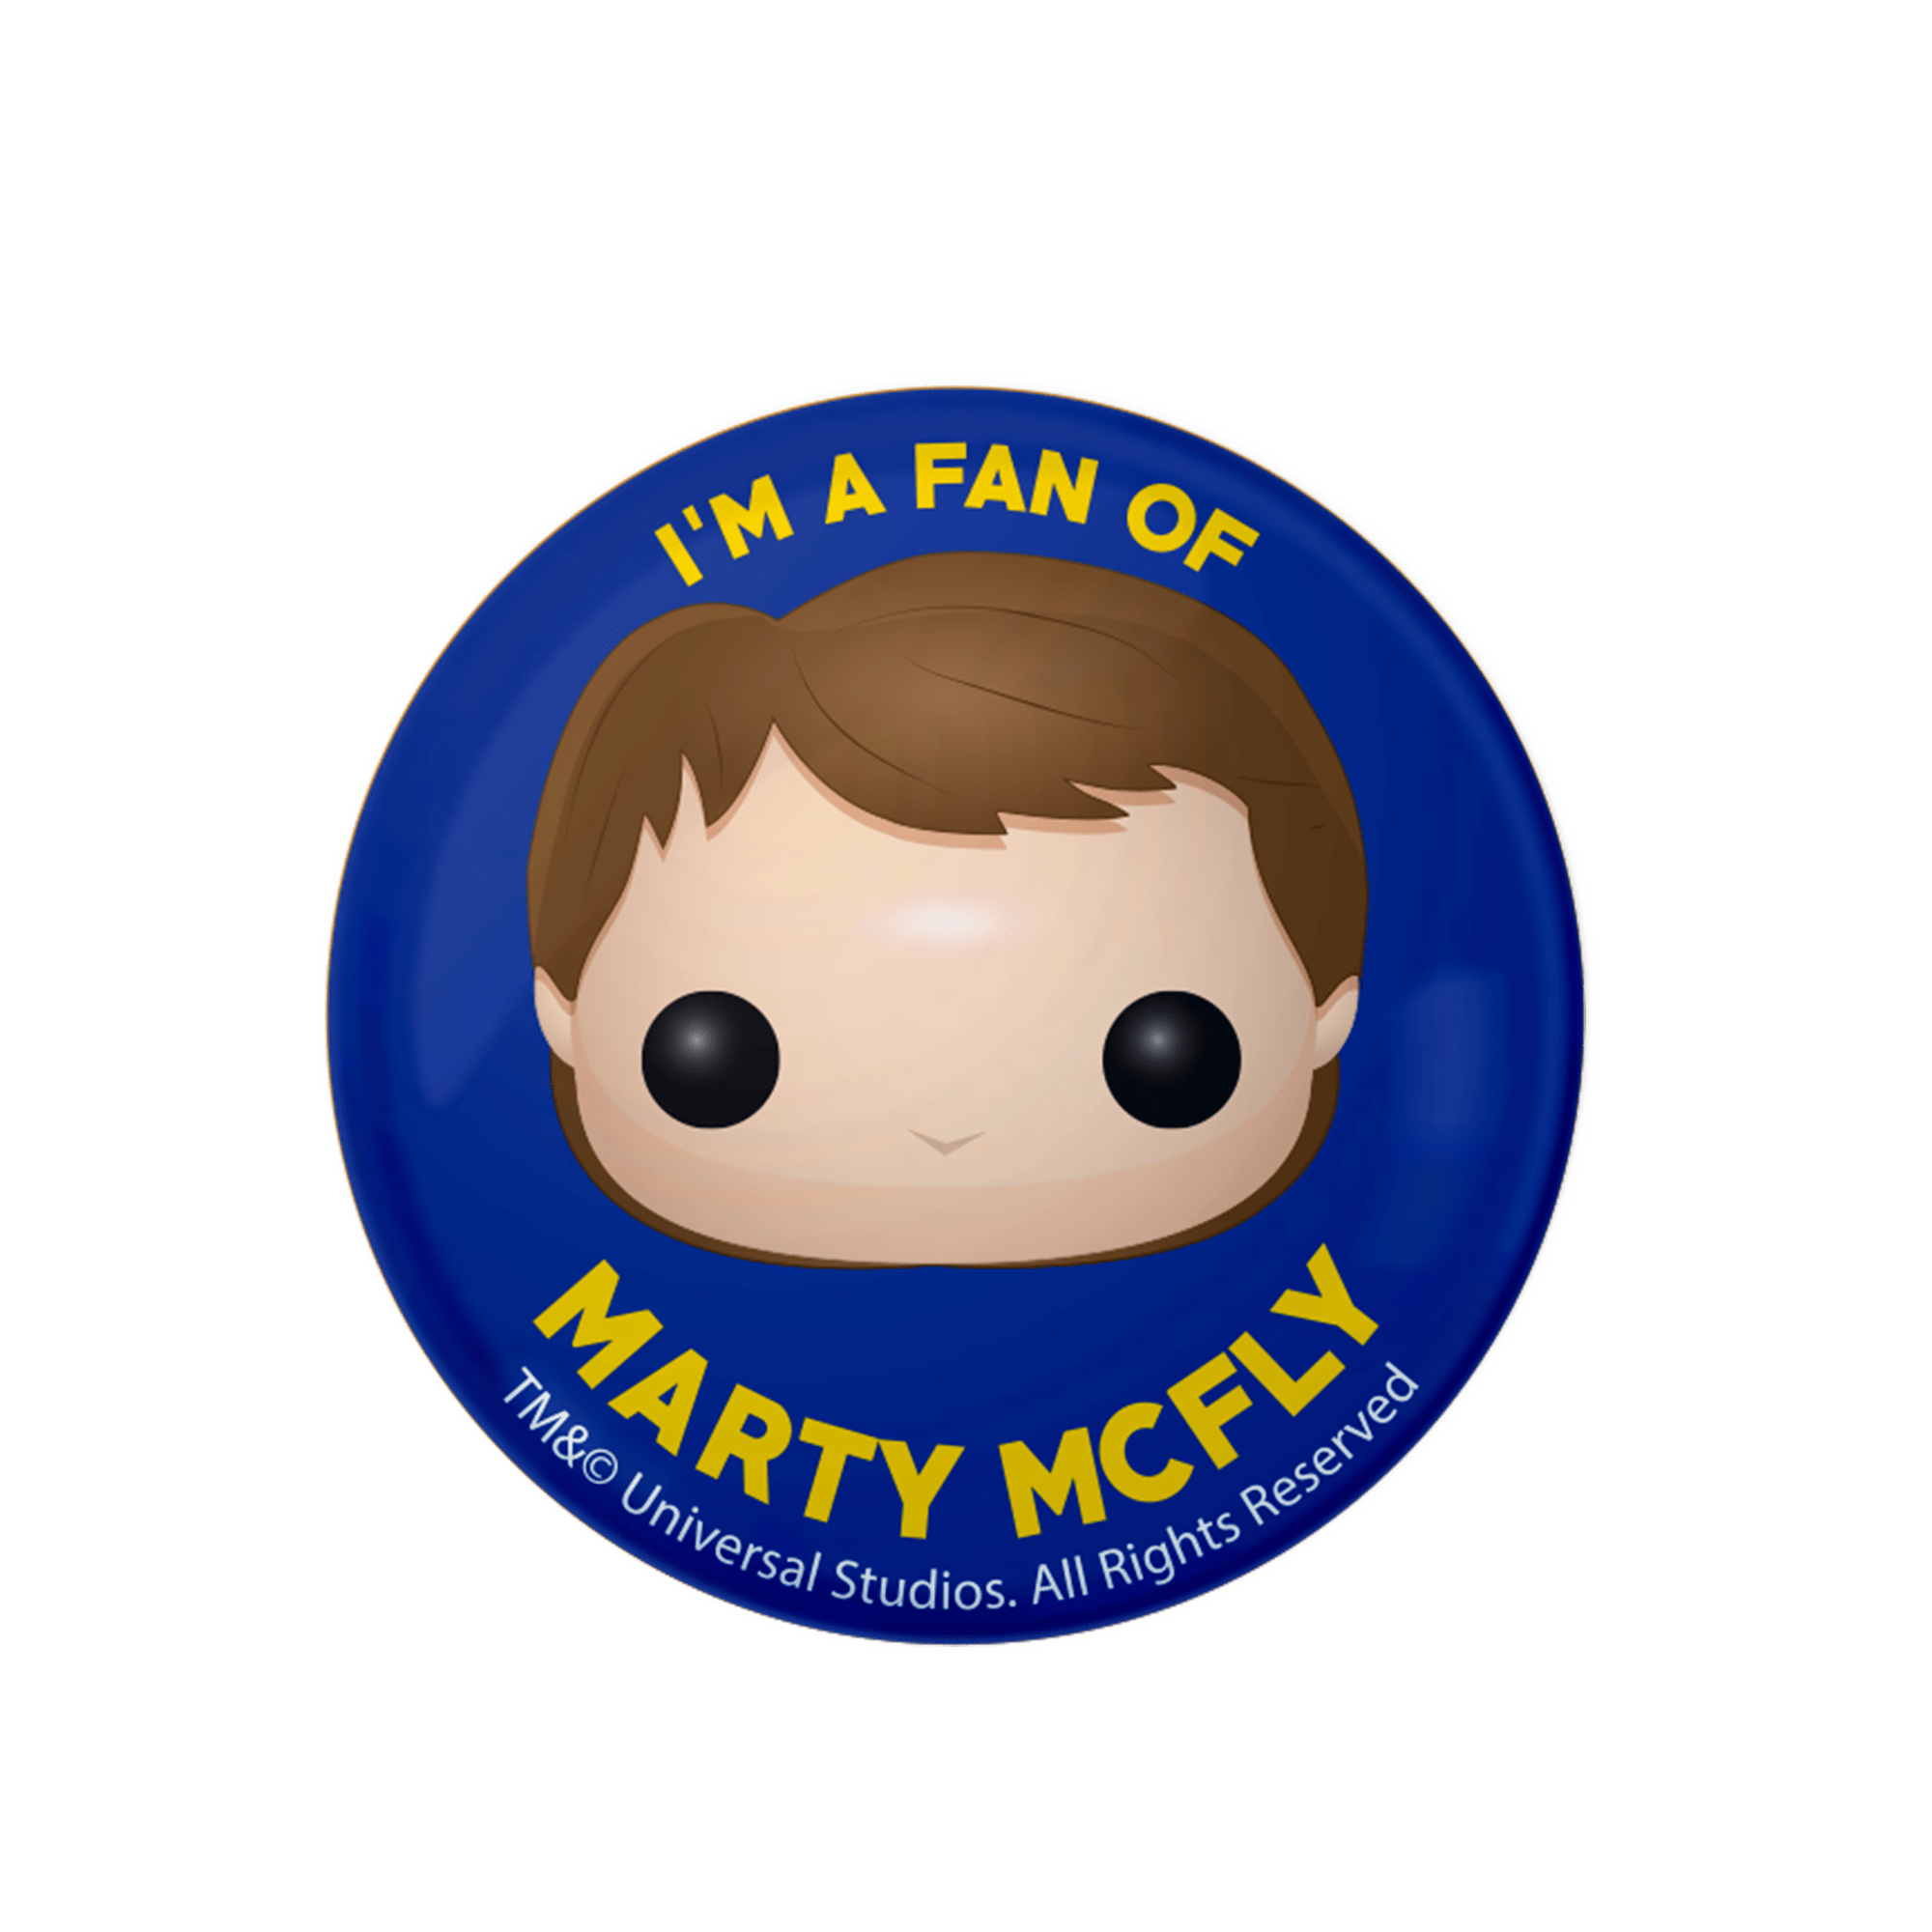 McFly Logo - I'm A Fan of Marty McFly. Catalog. Funko is a fan